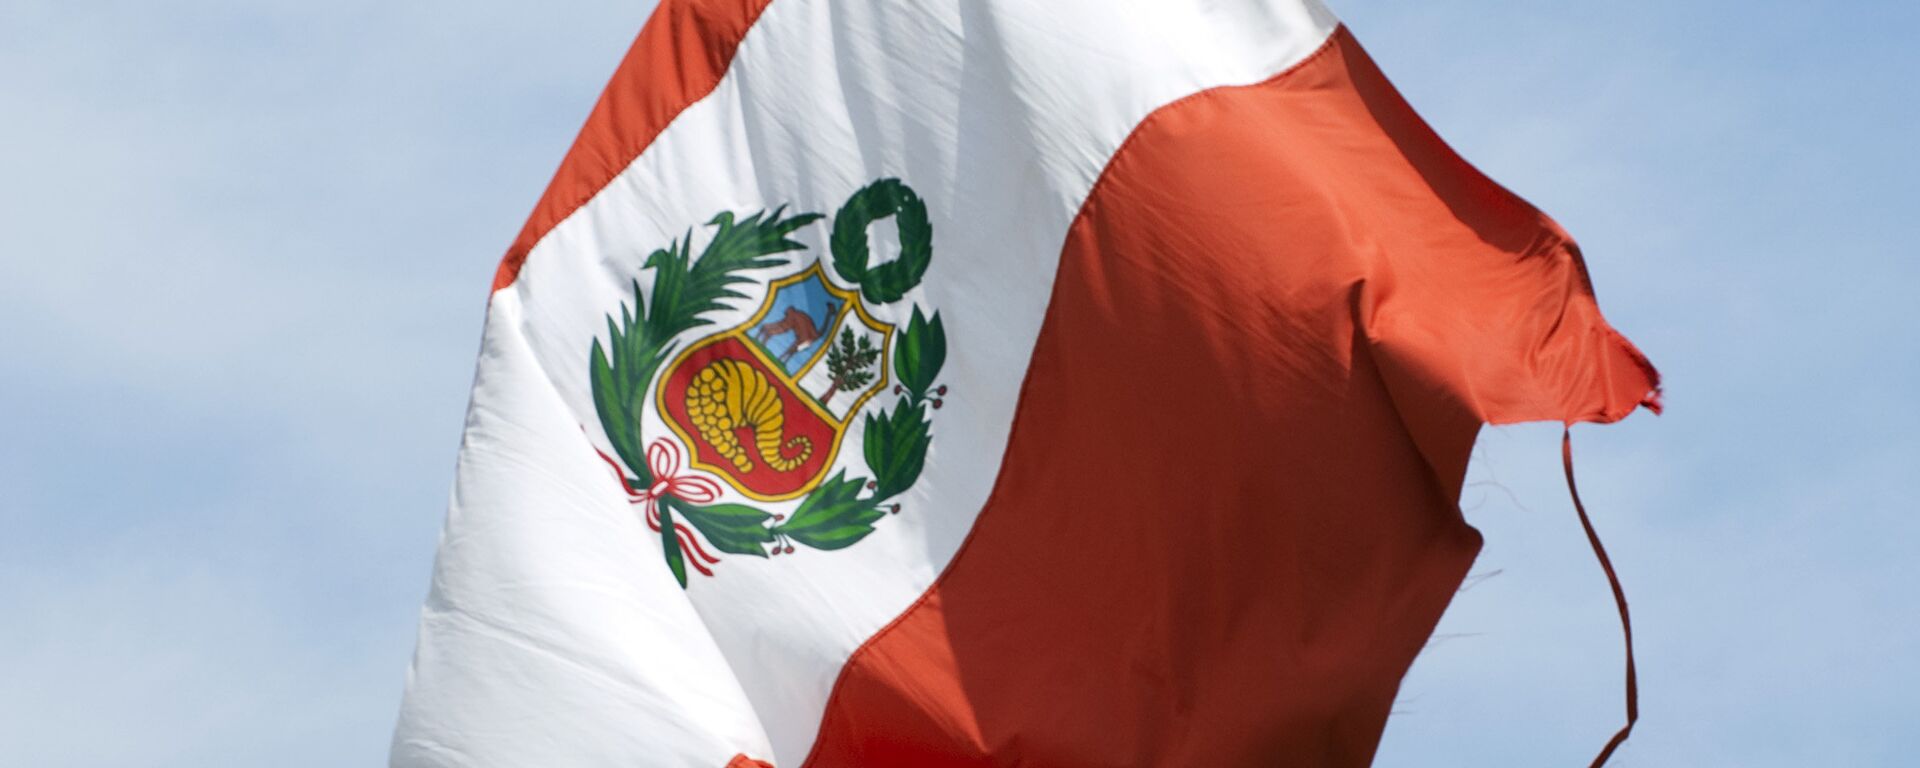 La bandera de Perú - Sputnik Mundo, 1920, 07.09.2021